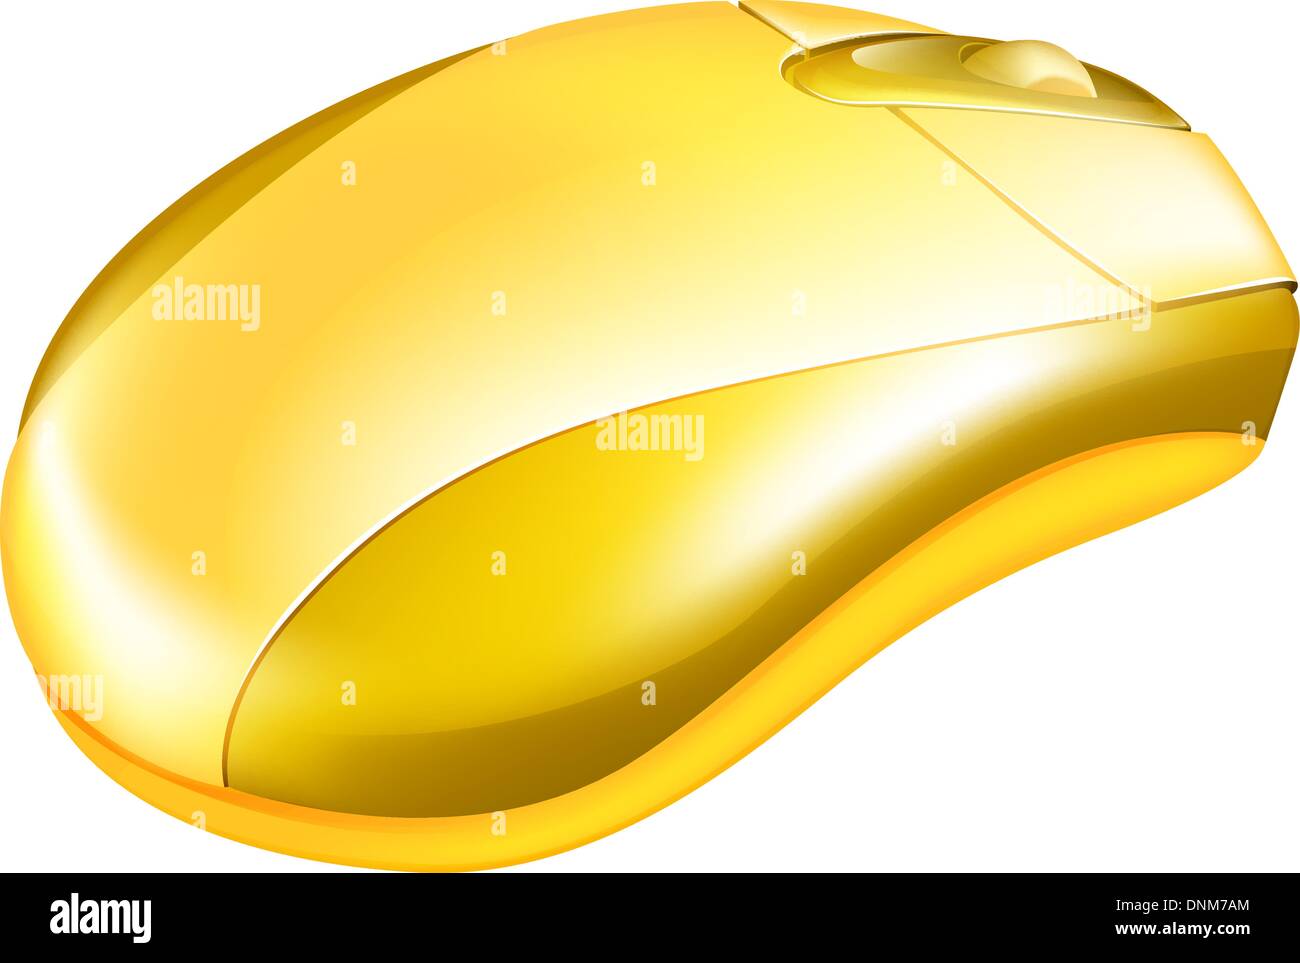 Illustrazione di un oro metallizzato computer mouse con rotella Illustrazione Vettoriale